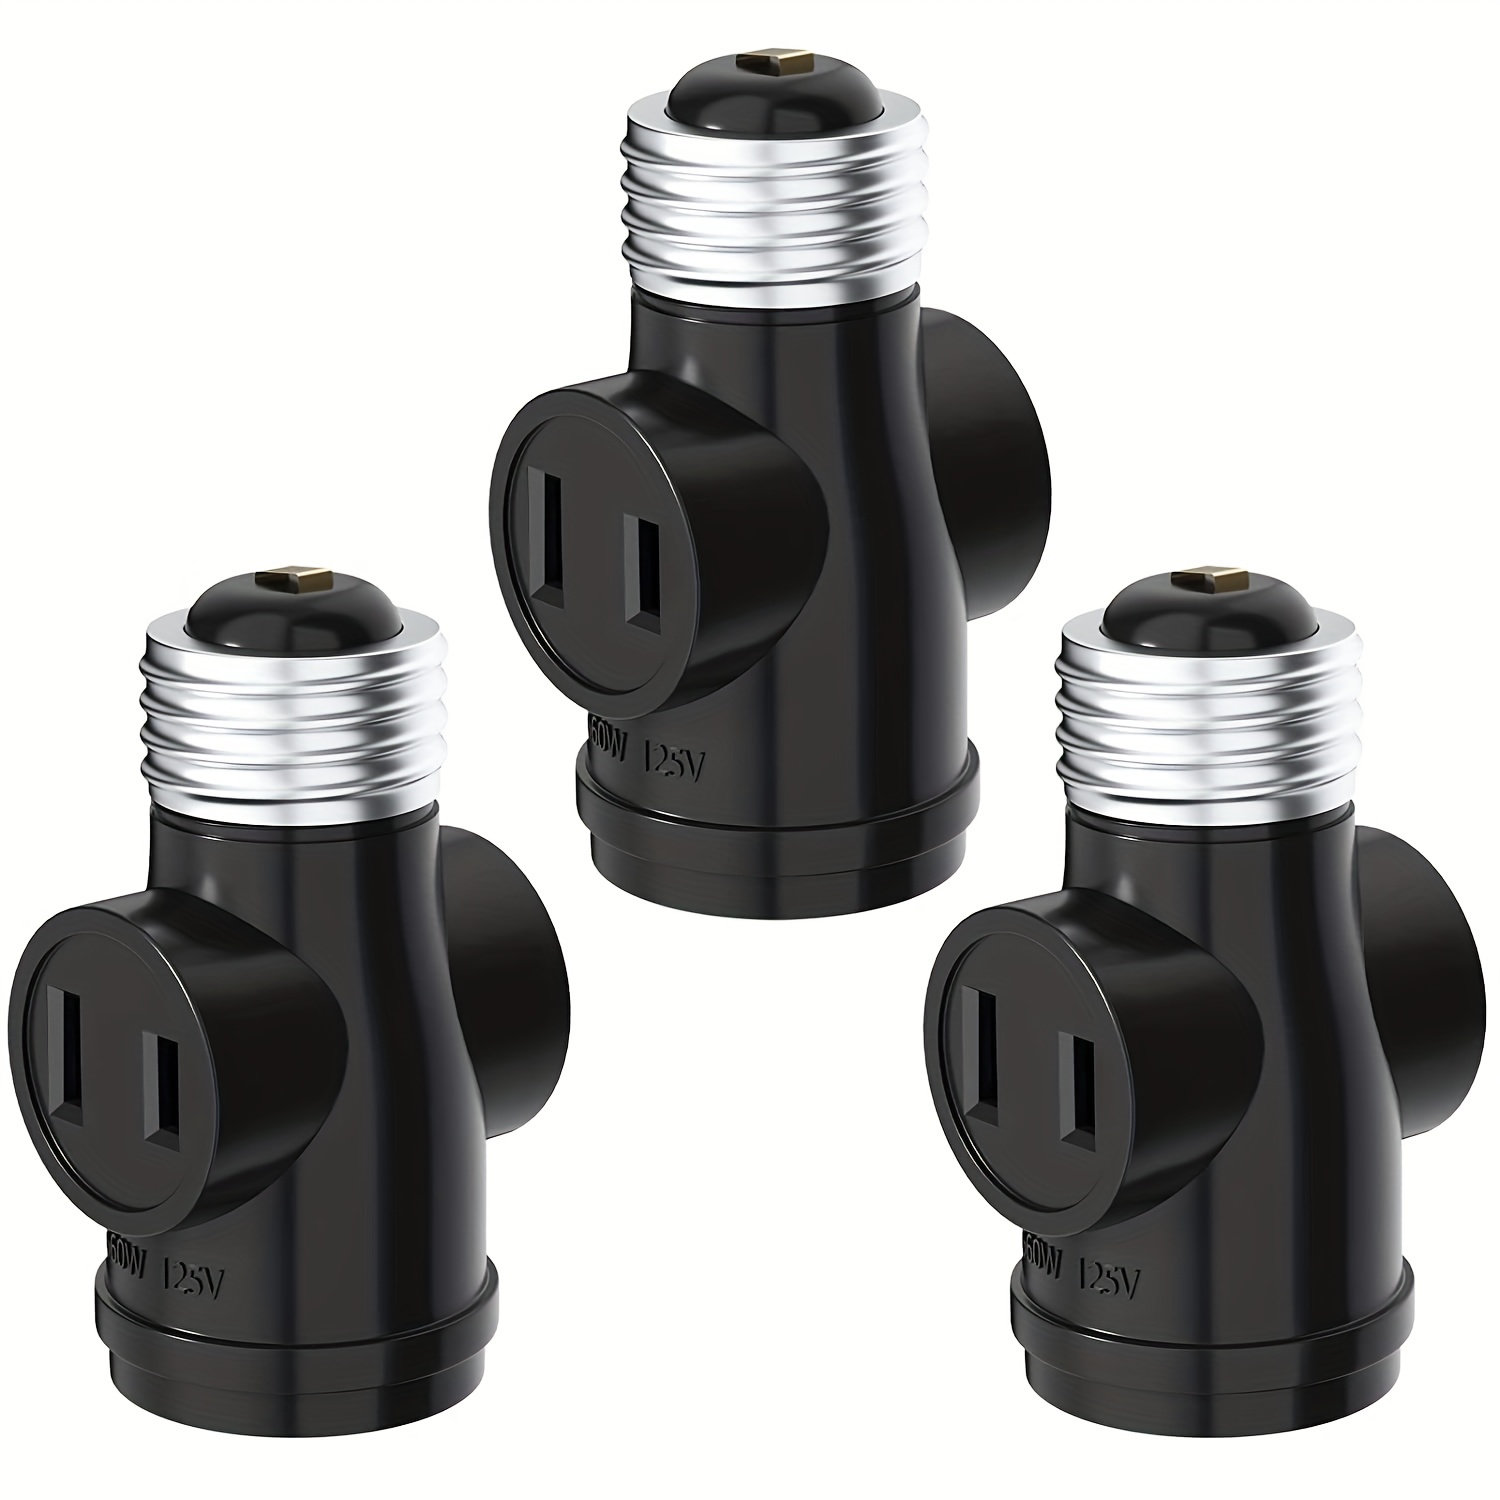 4 in 1 E26/E27 Edison Base Light Bulb Socket Splitter for Photo Studio  Lighting, Work Shop, Garage Lighting